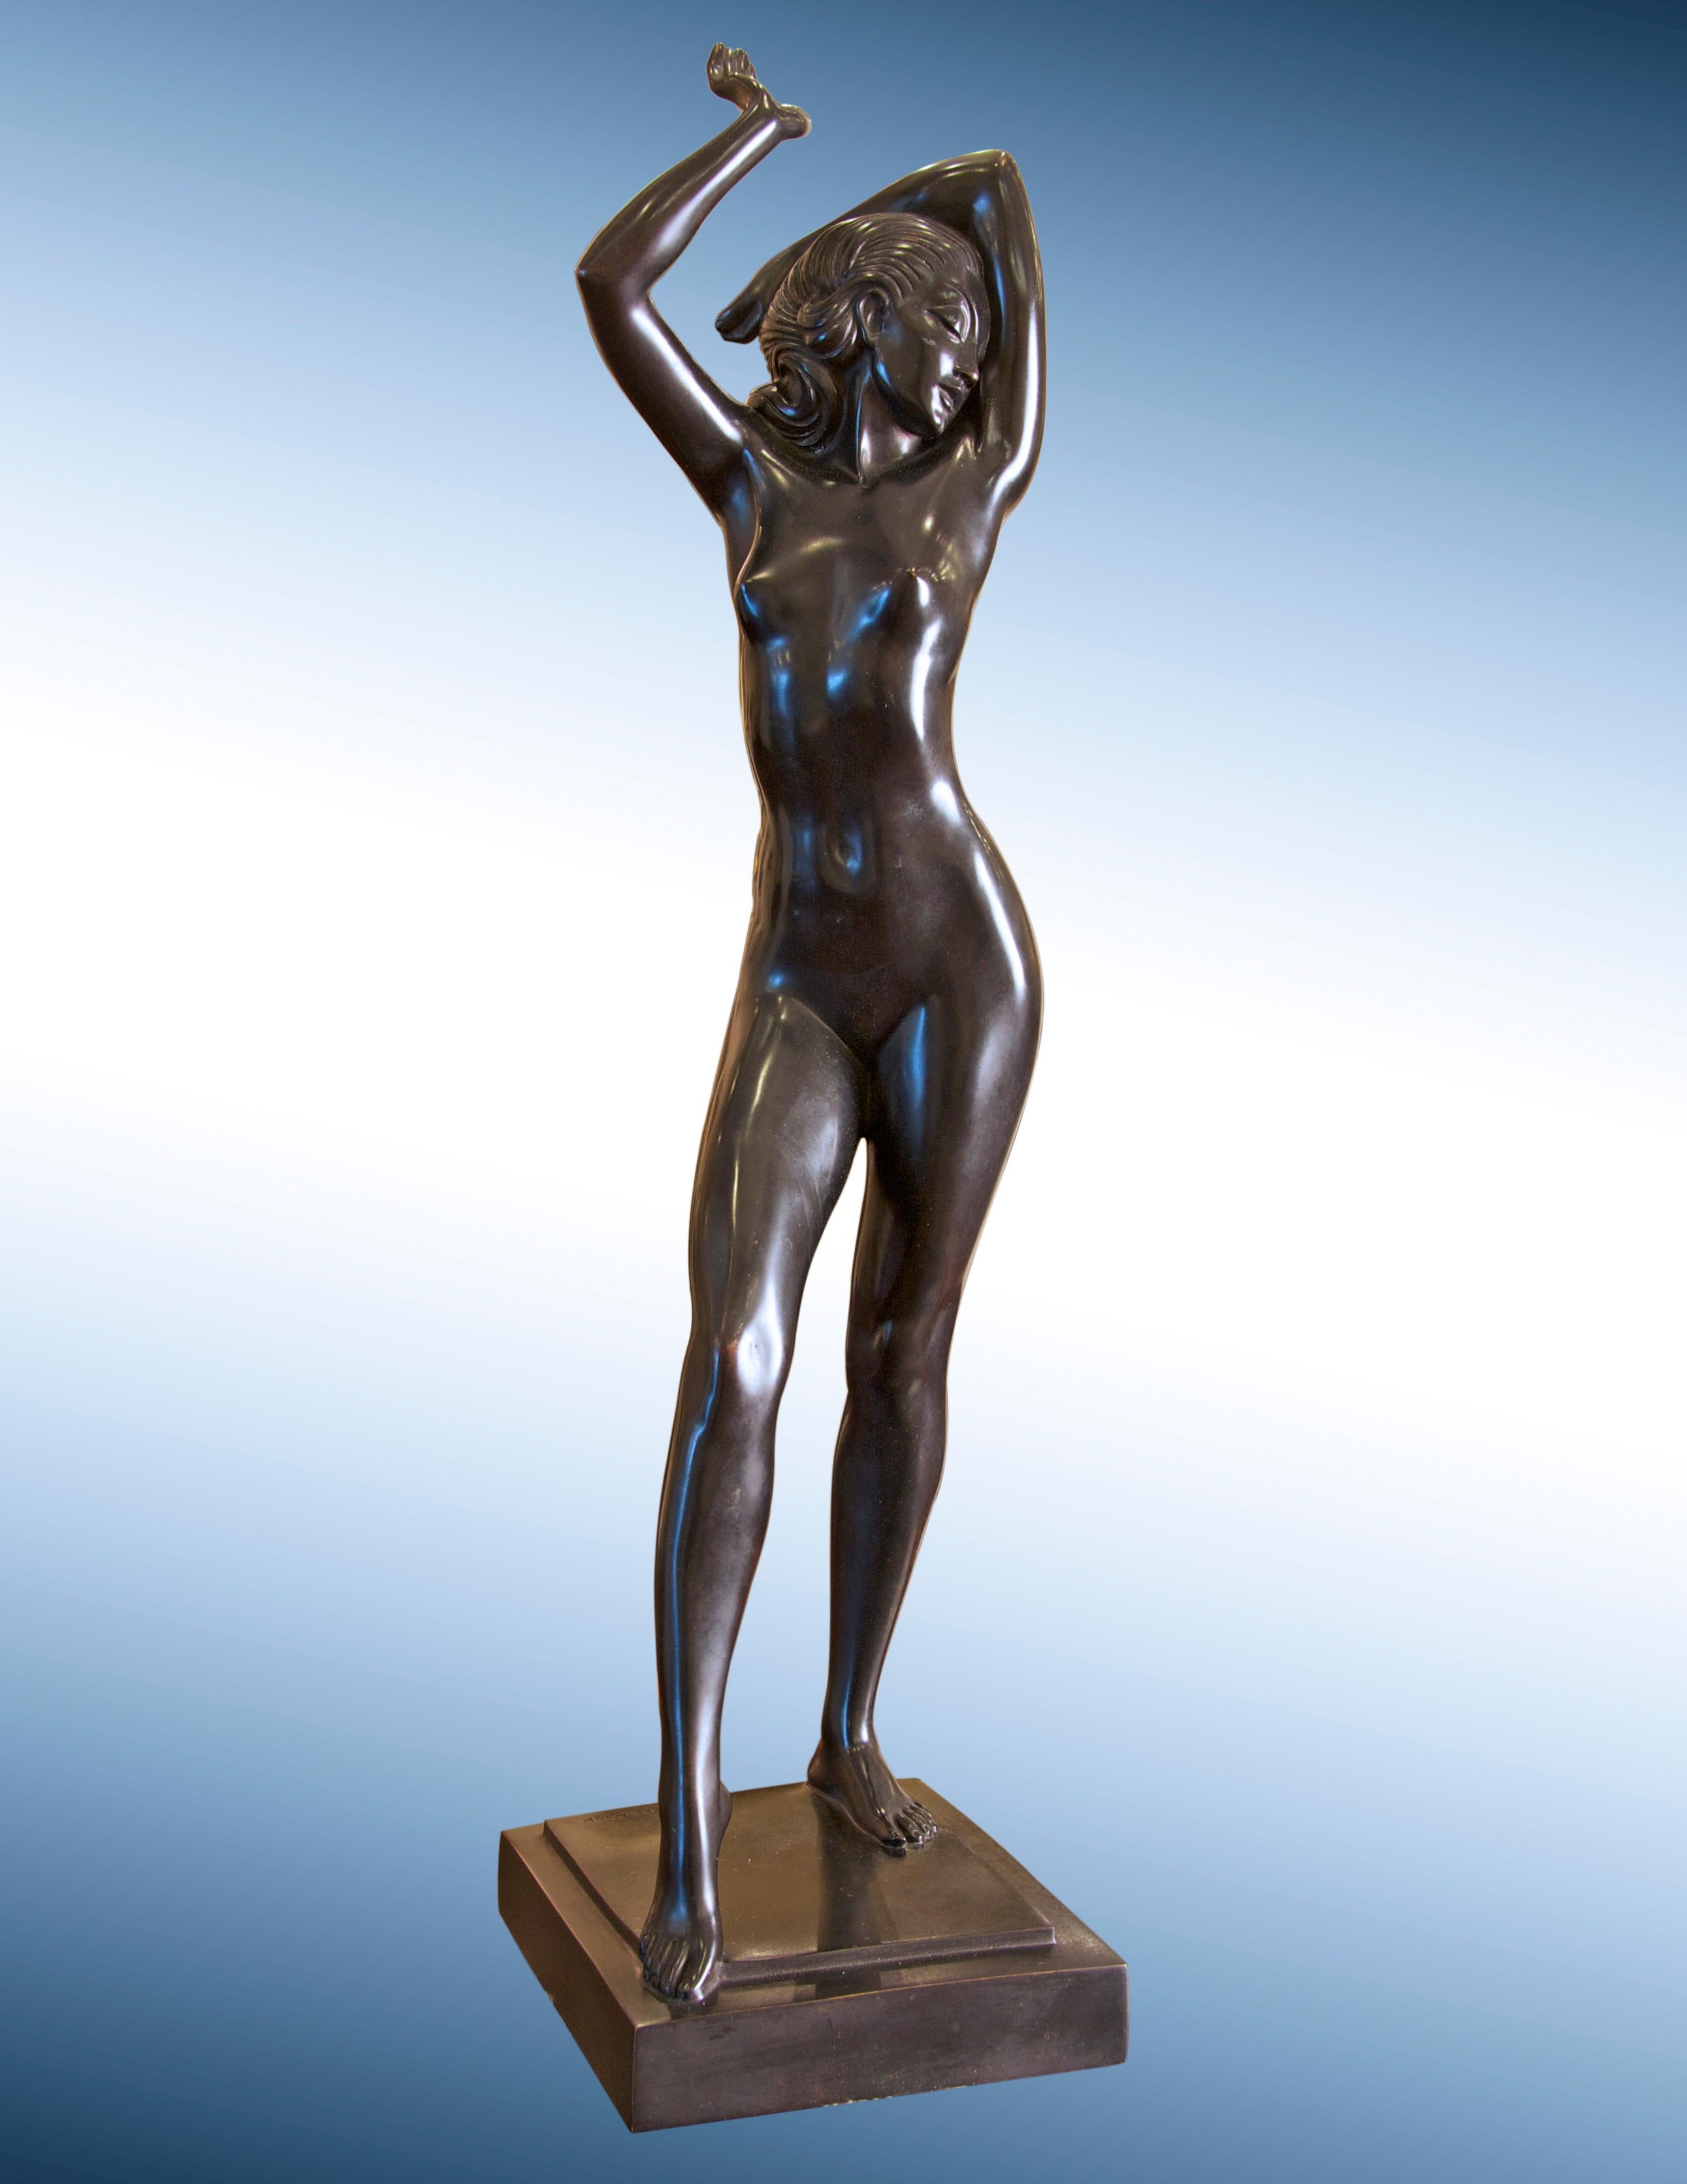 Allan Clark Nude Sculpture - Art Deco Female Nude Bronze Sculpture, "In the Path of the Sun" 